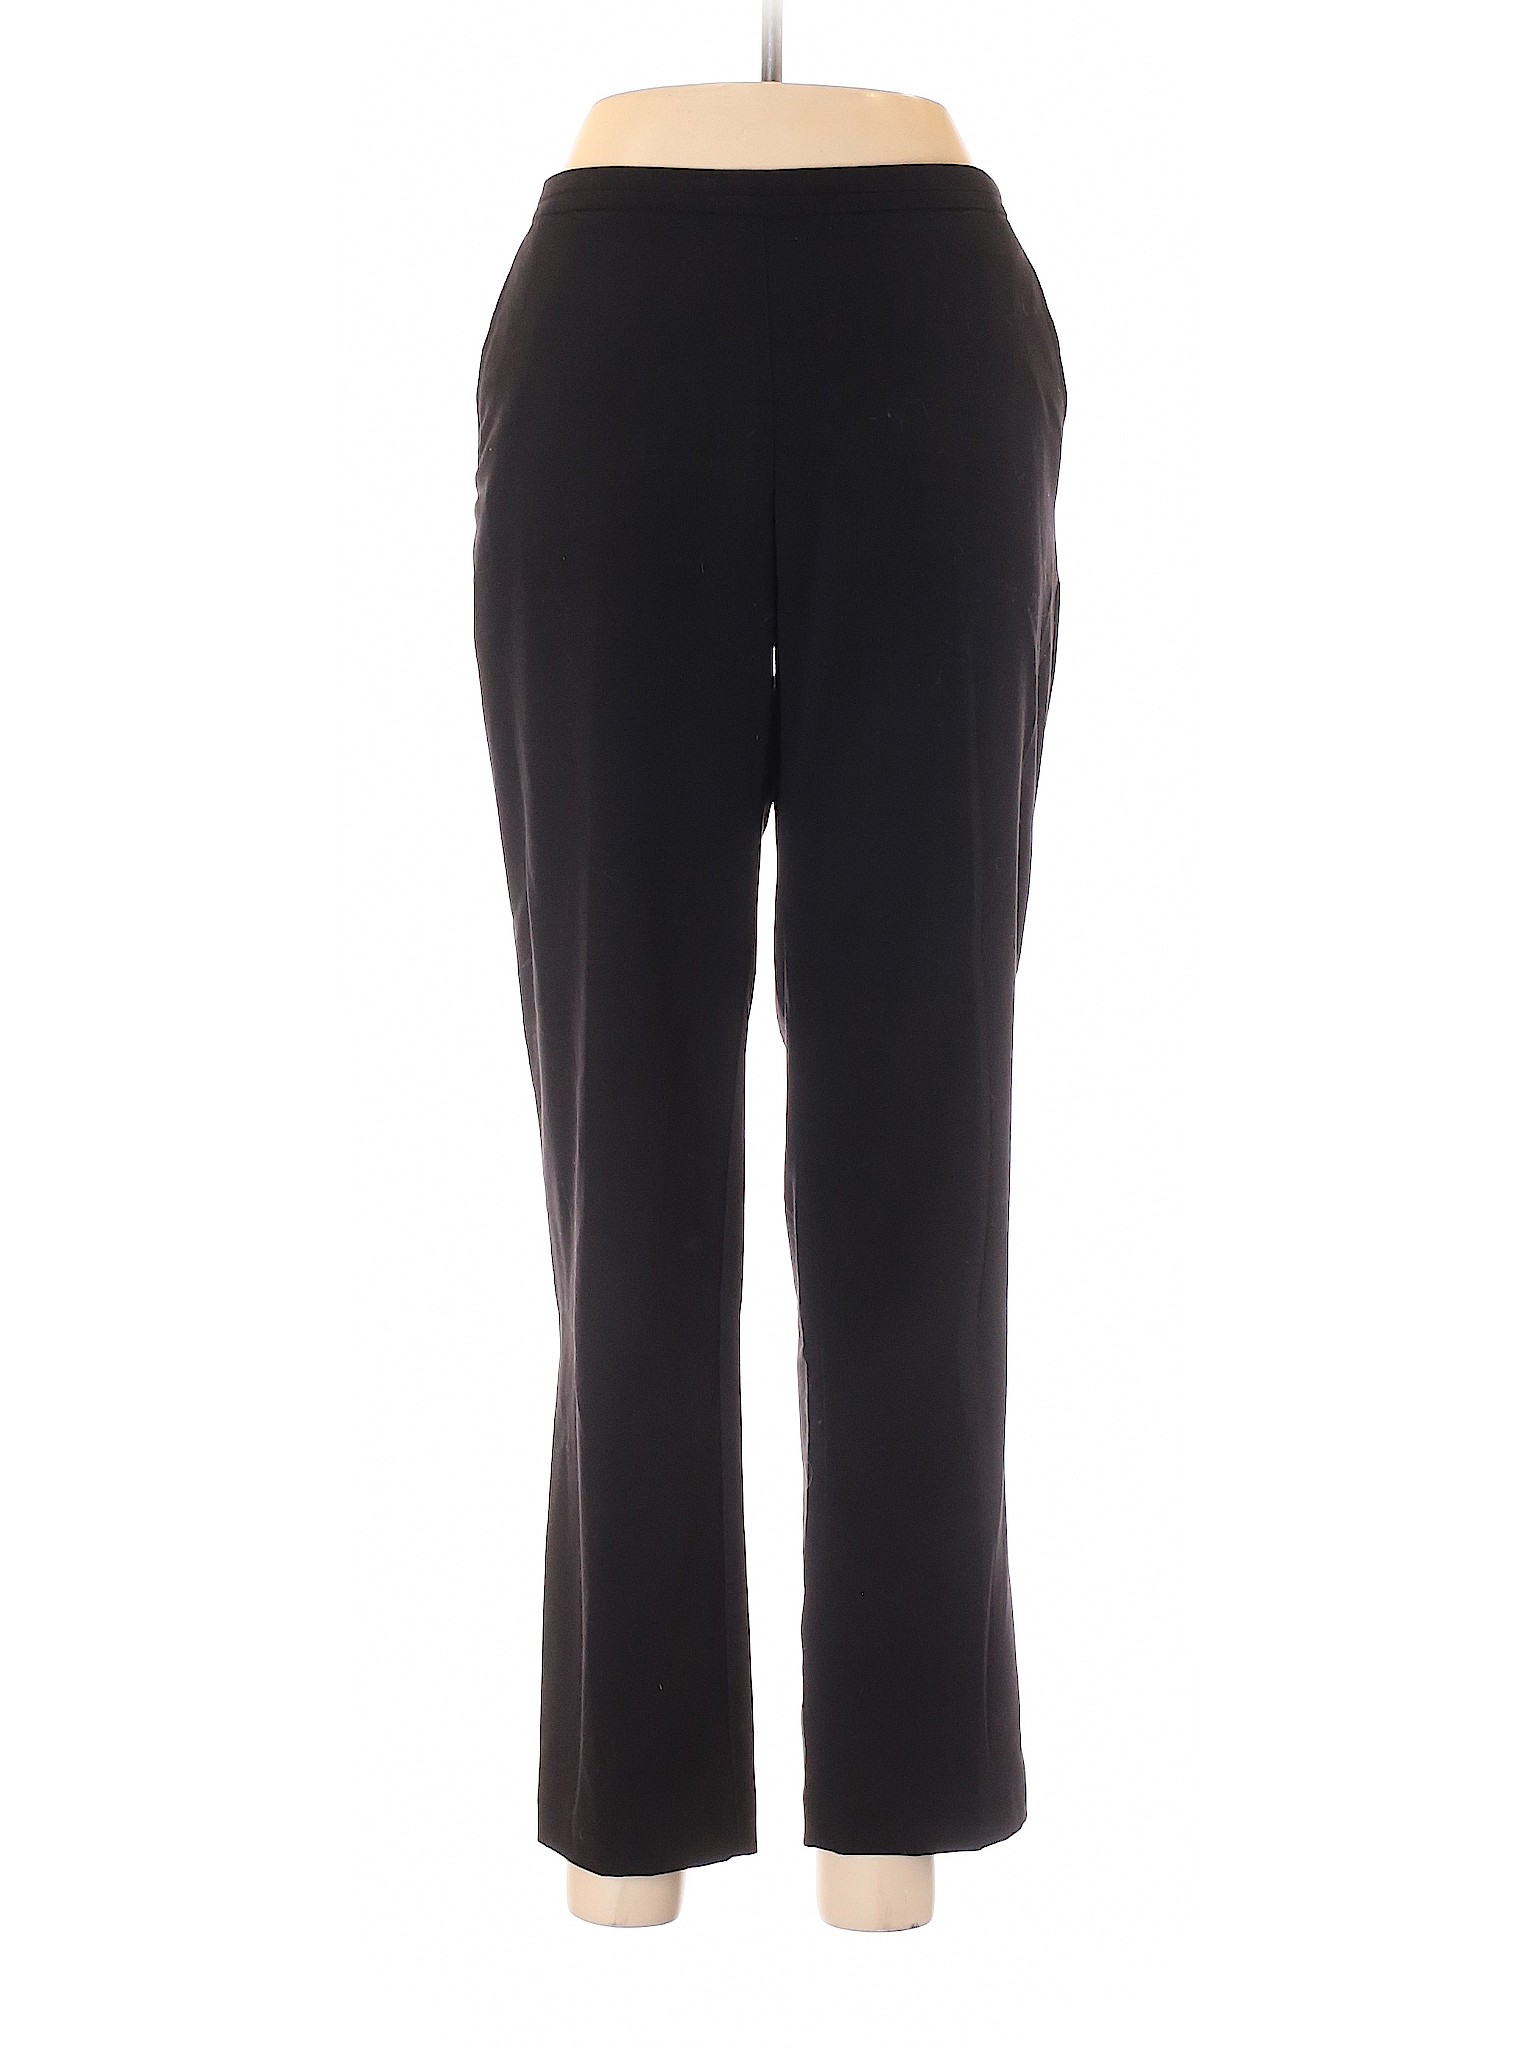 Ellen Tracy Women Black Casual Pants 8 | eBay